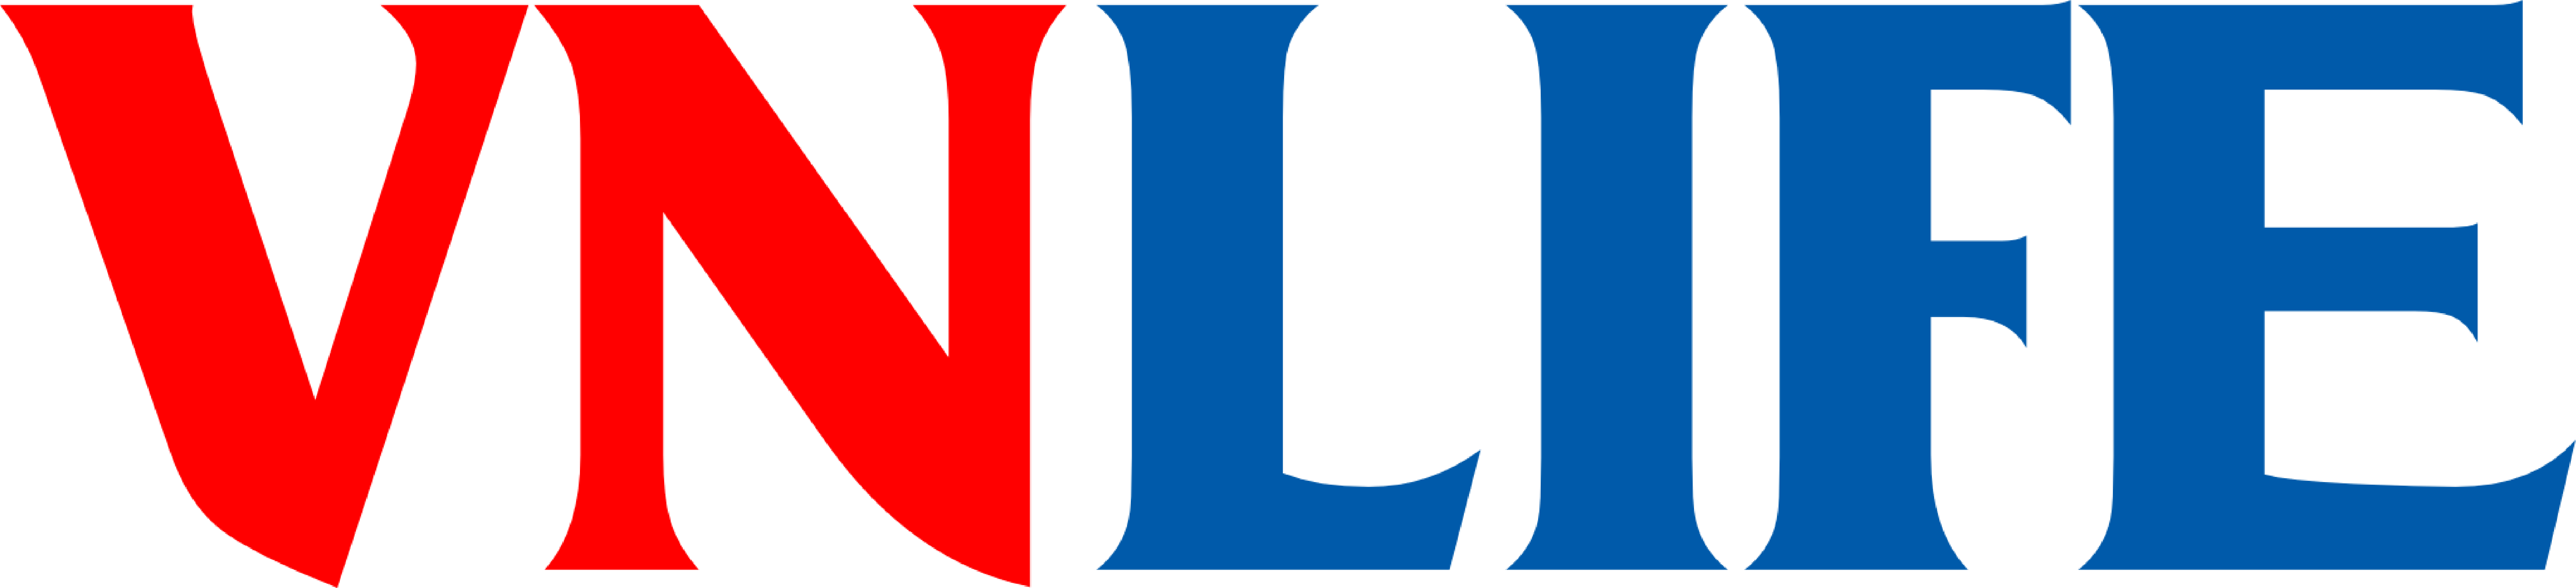 associations-logo